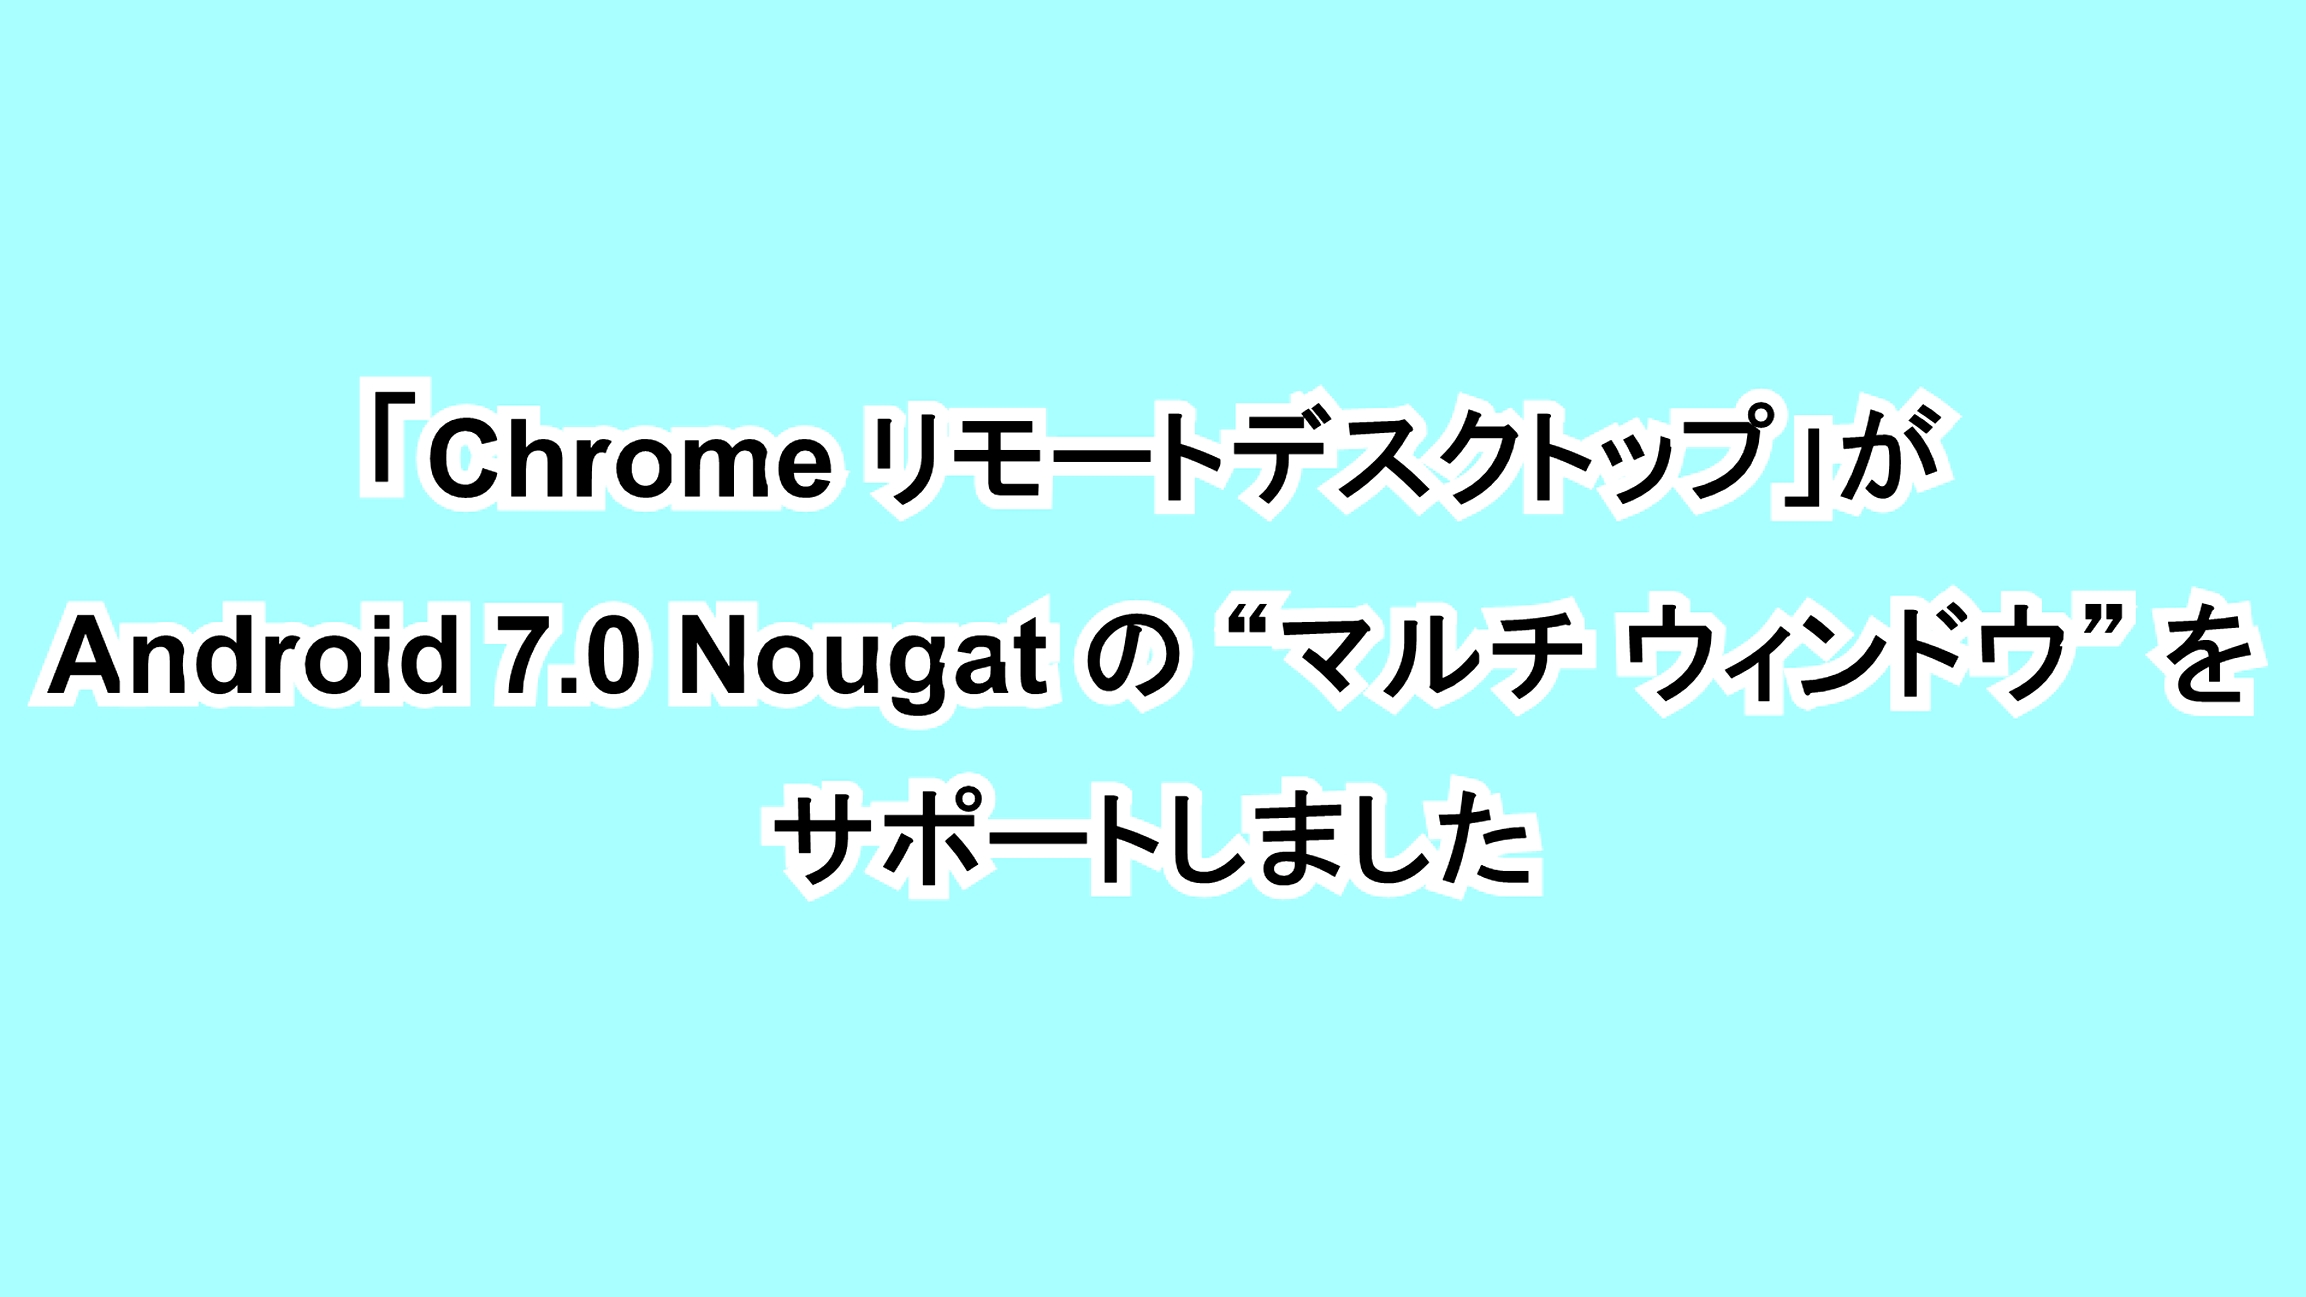 「Chrome リモートデスクトップ」がAndroid 7.0 Nougatの“マルチ ウィンドウ”をサポートしました